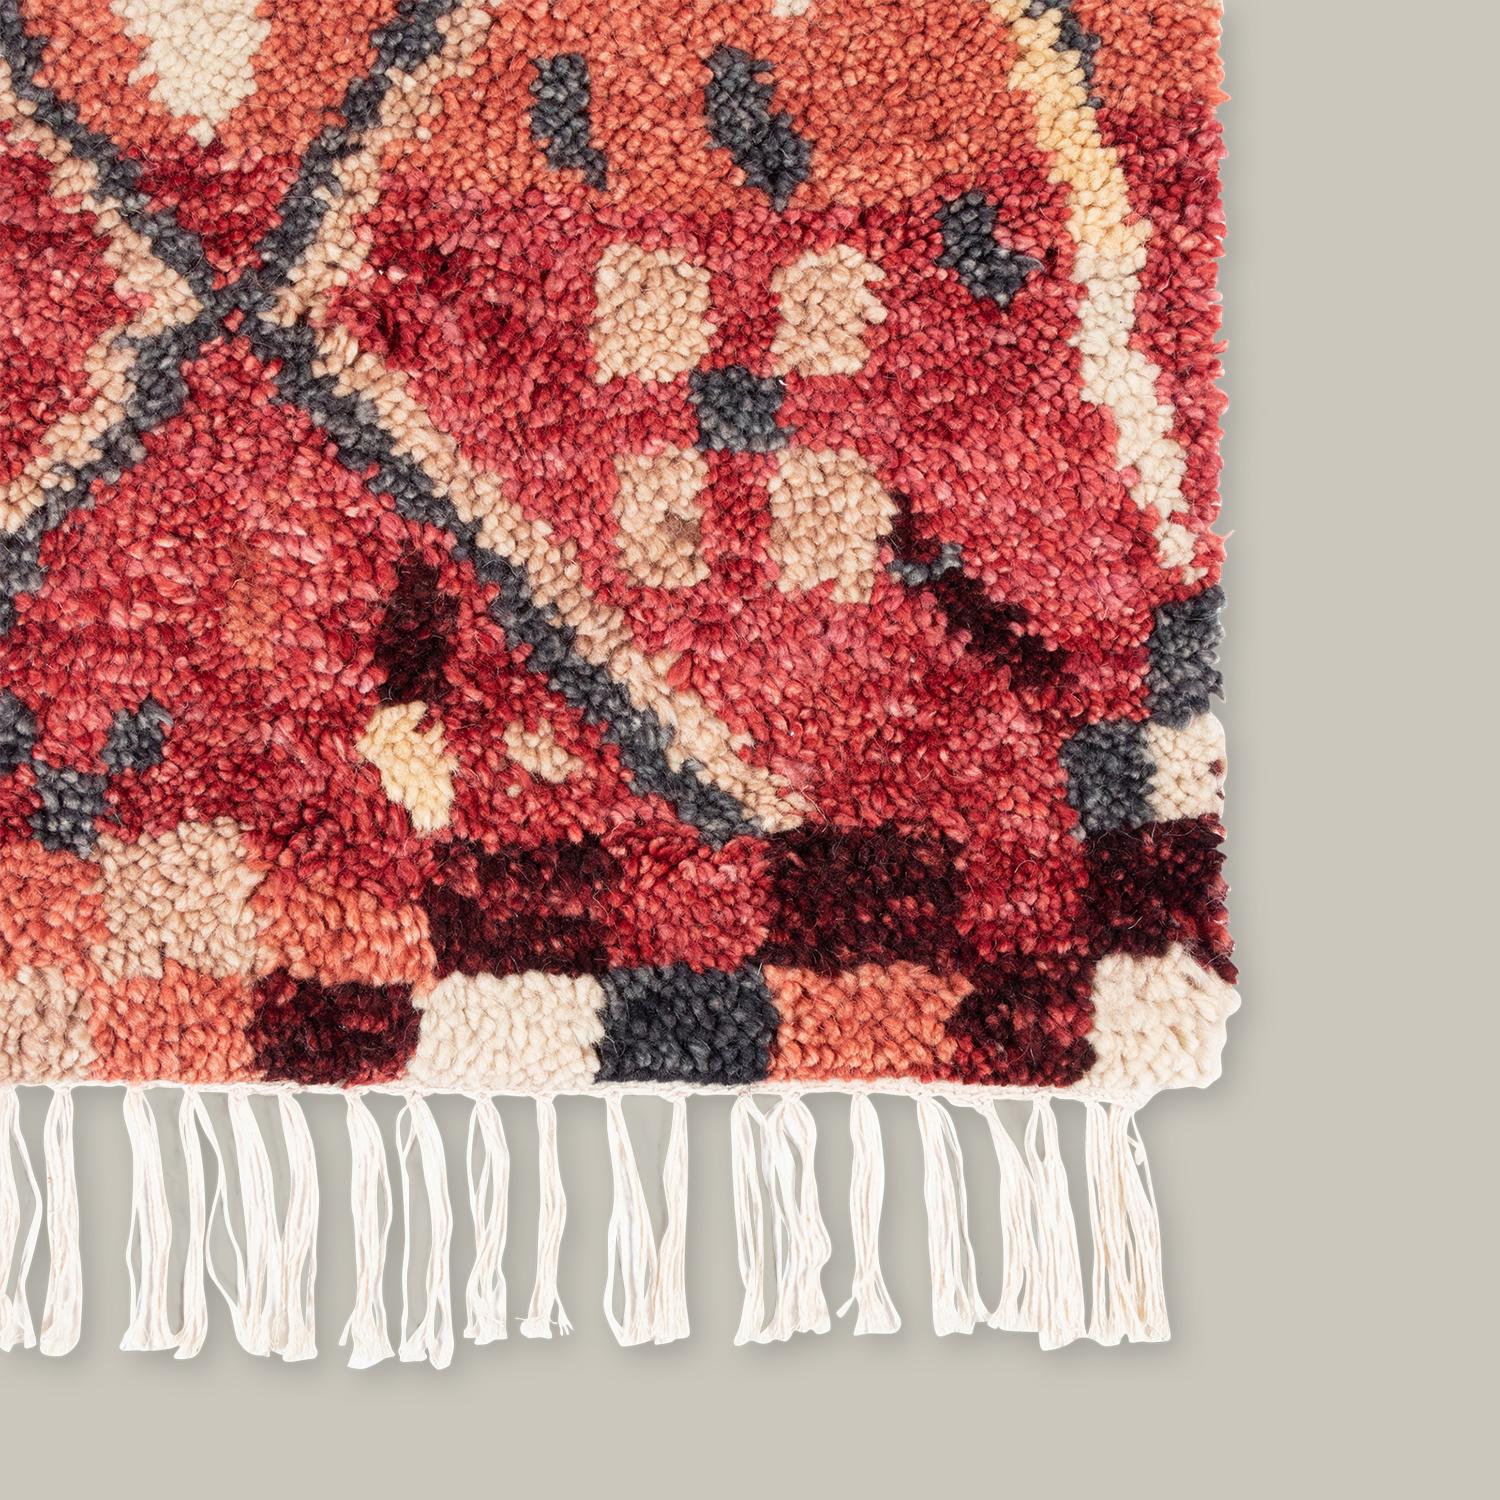 Traditionelle marokkanische Flickenteppiche inspirieren die Doukkala-Kollektion. Der aus Wolle handgeknüpfte Flor wird von Hand geschoren, um ein unregelmäßiges Aussehen zu erzeugen, das unter den Füßen eine dichte, fast wolkenartige Textur bildet.